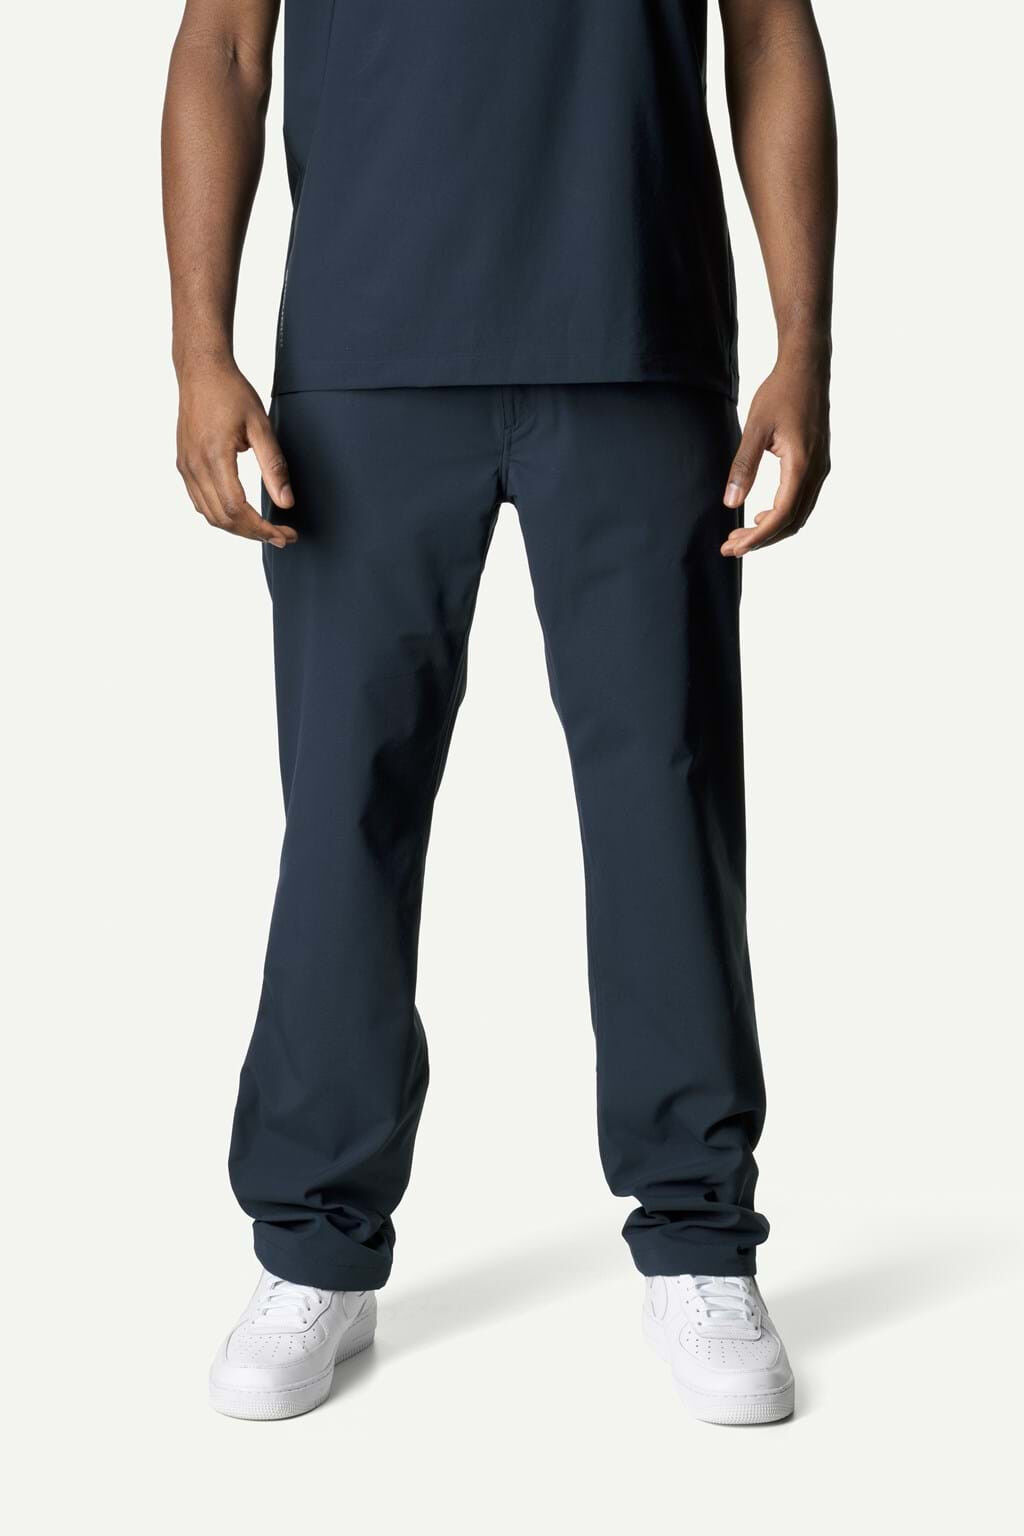 Houdini Sportswear Dock Pants - Spodnie turystyczne męskie | Hardloop